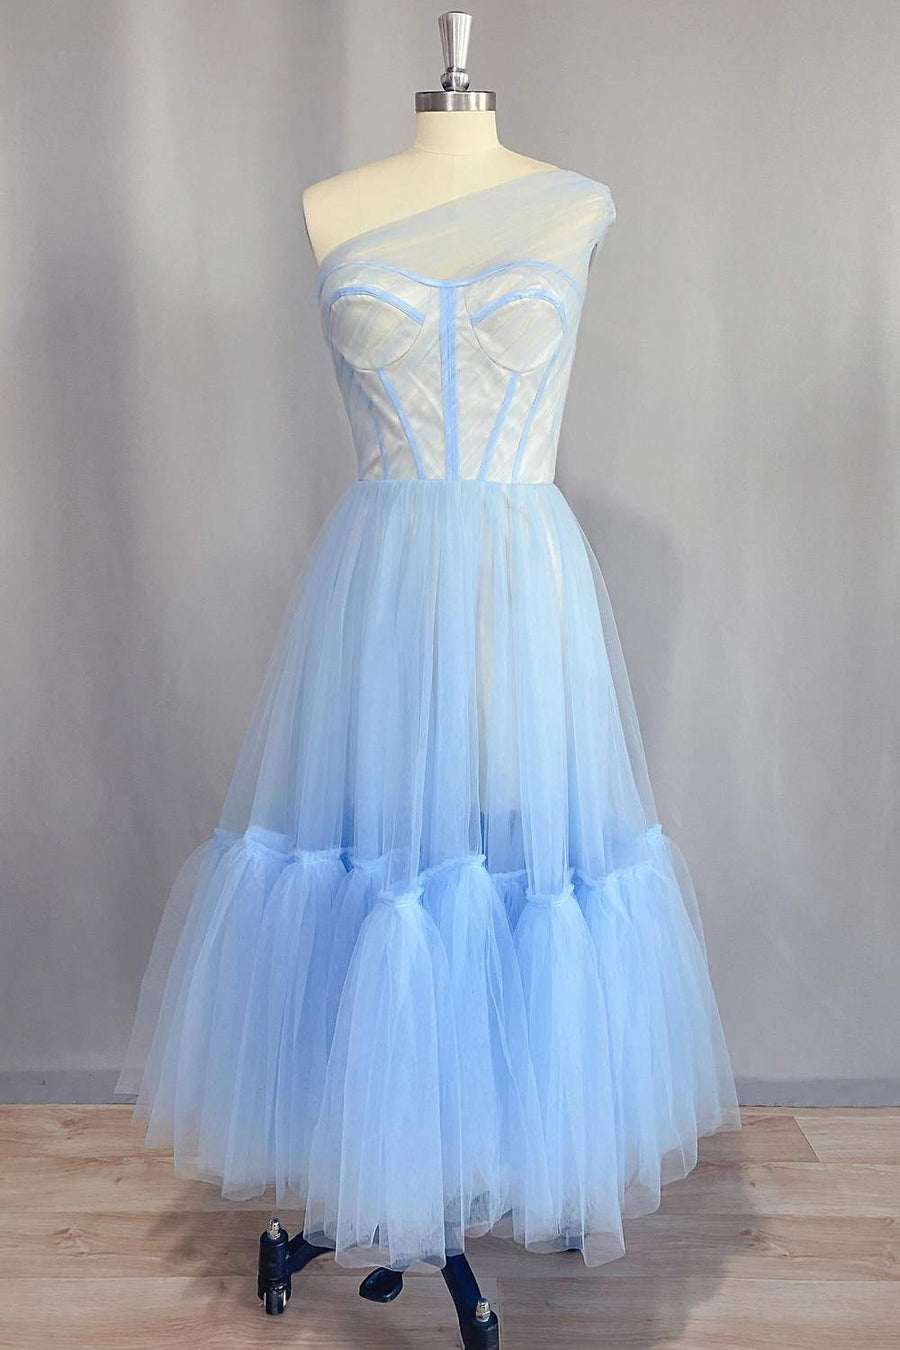 One Shoulder Light Blue Tulle Tea Length Dress